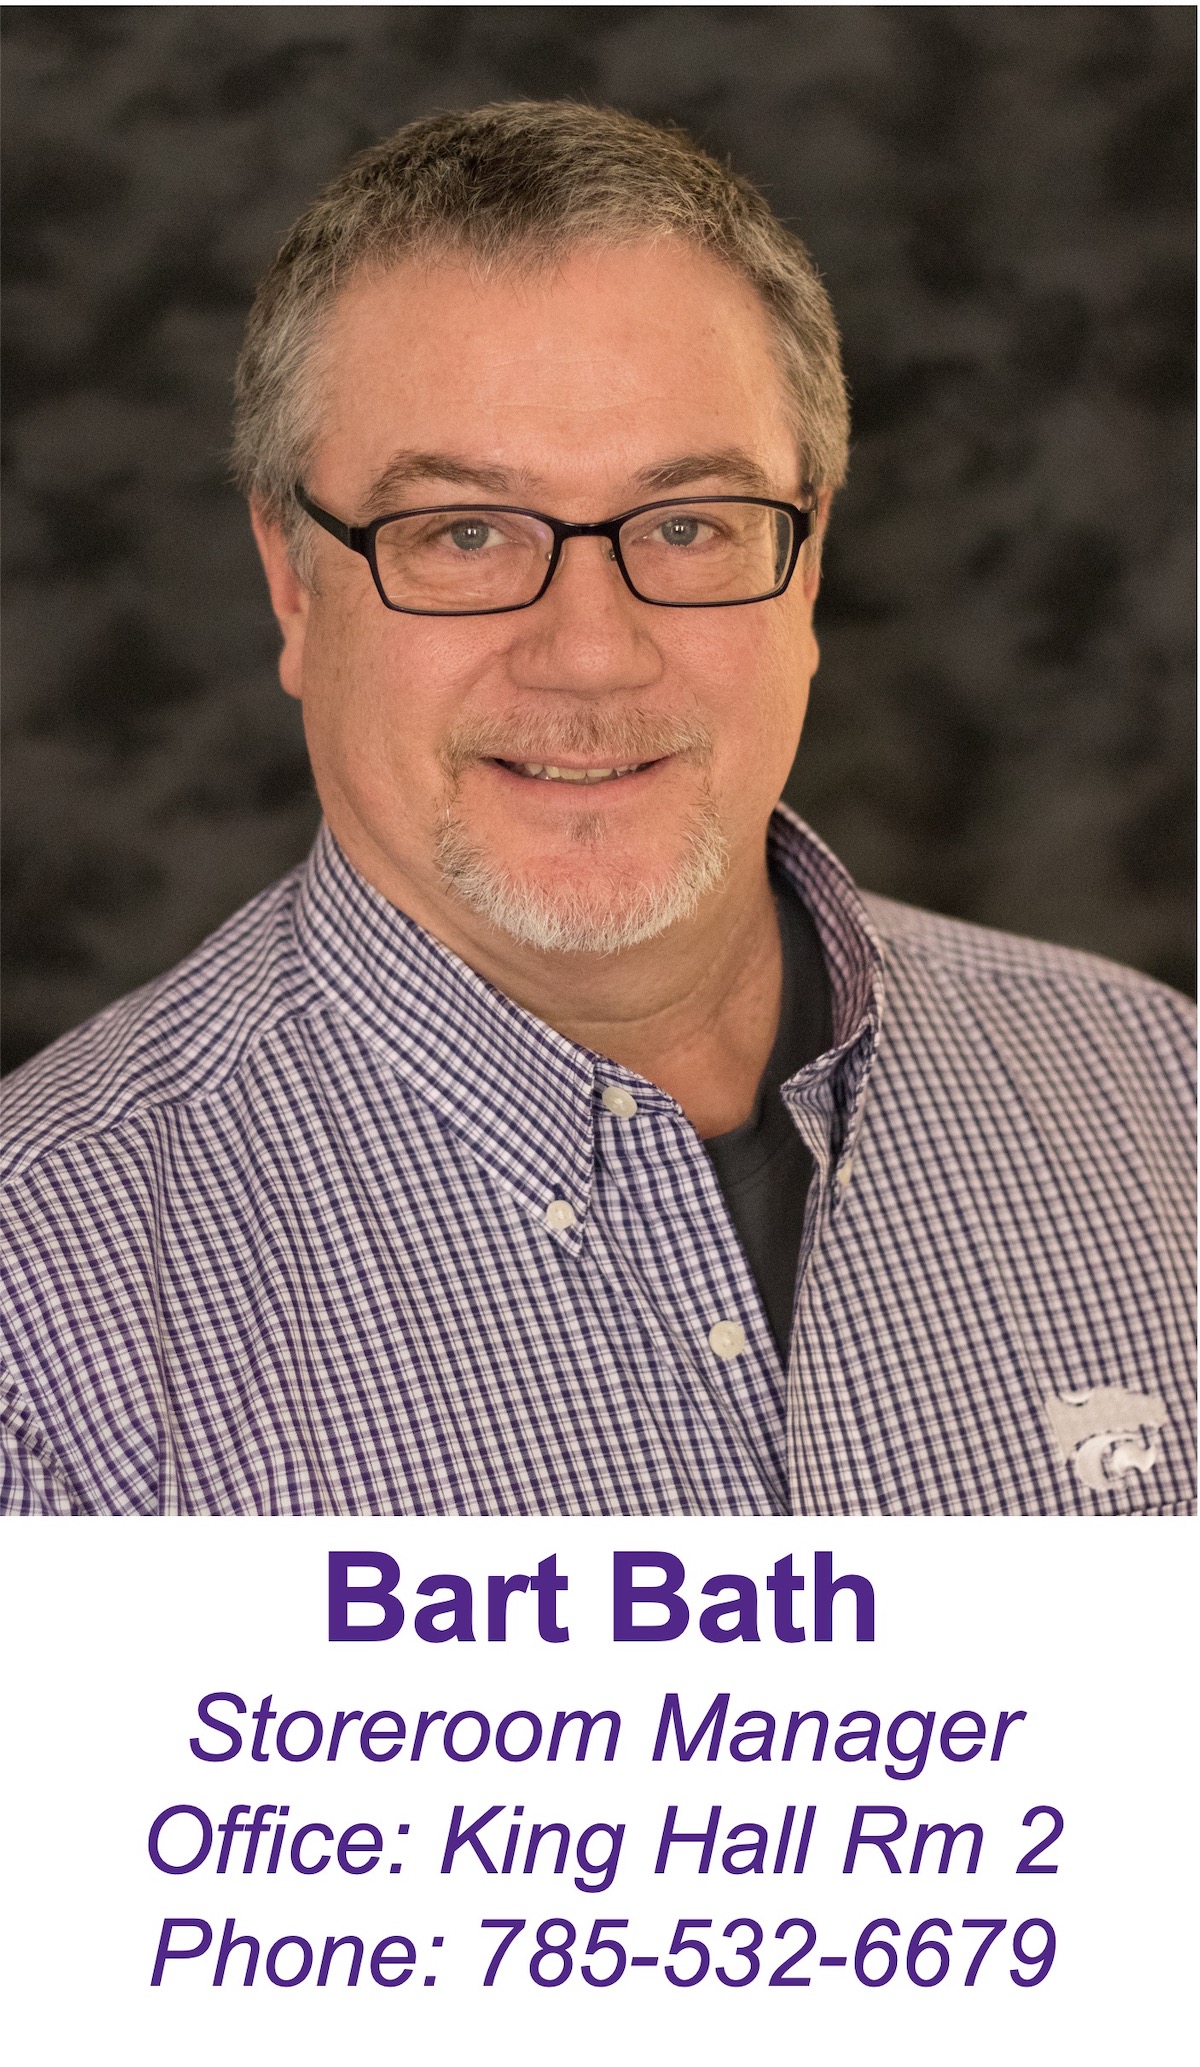 Bart Bath